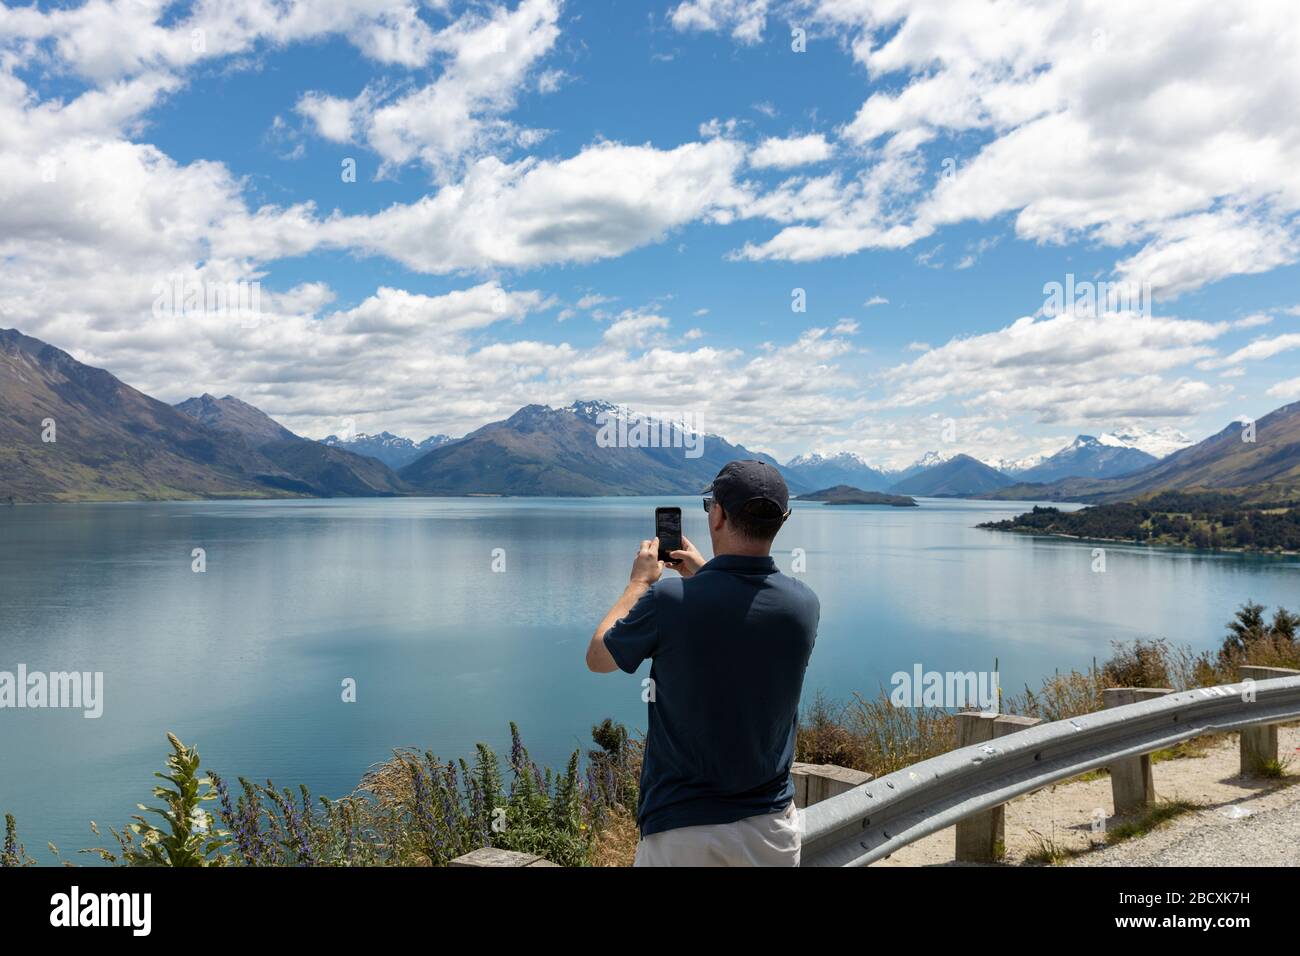 Un homme prenant une photo de la vue avec son smartphone Banque D'Images